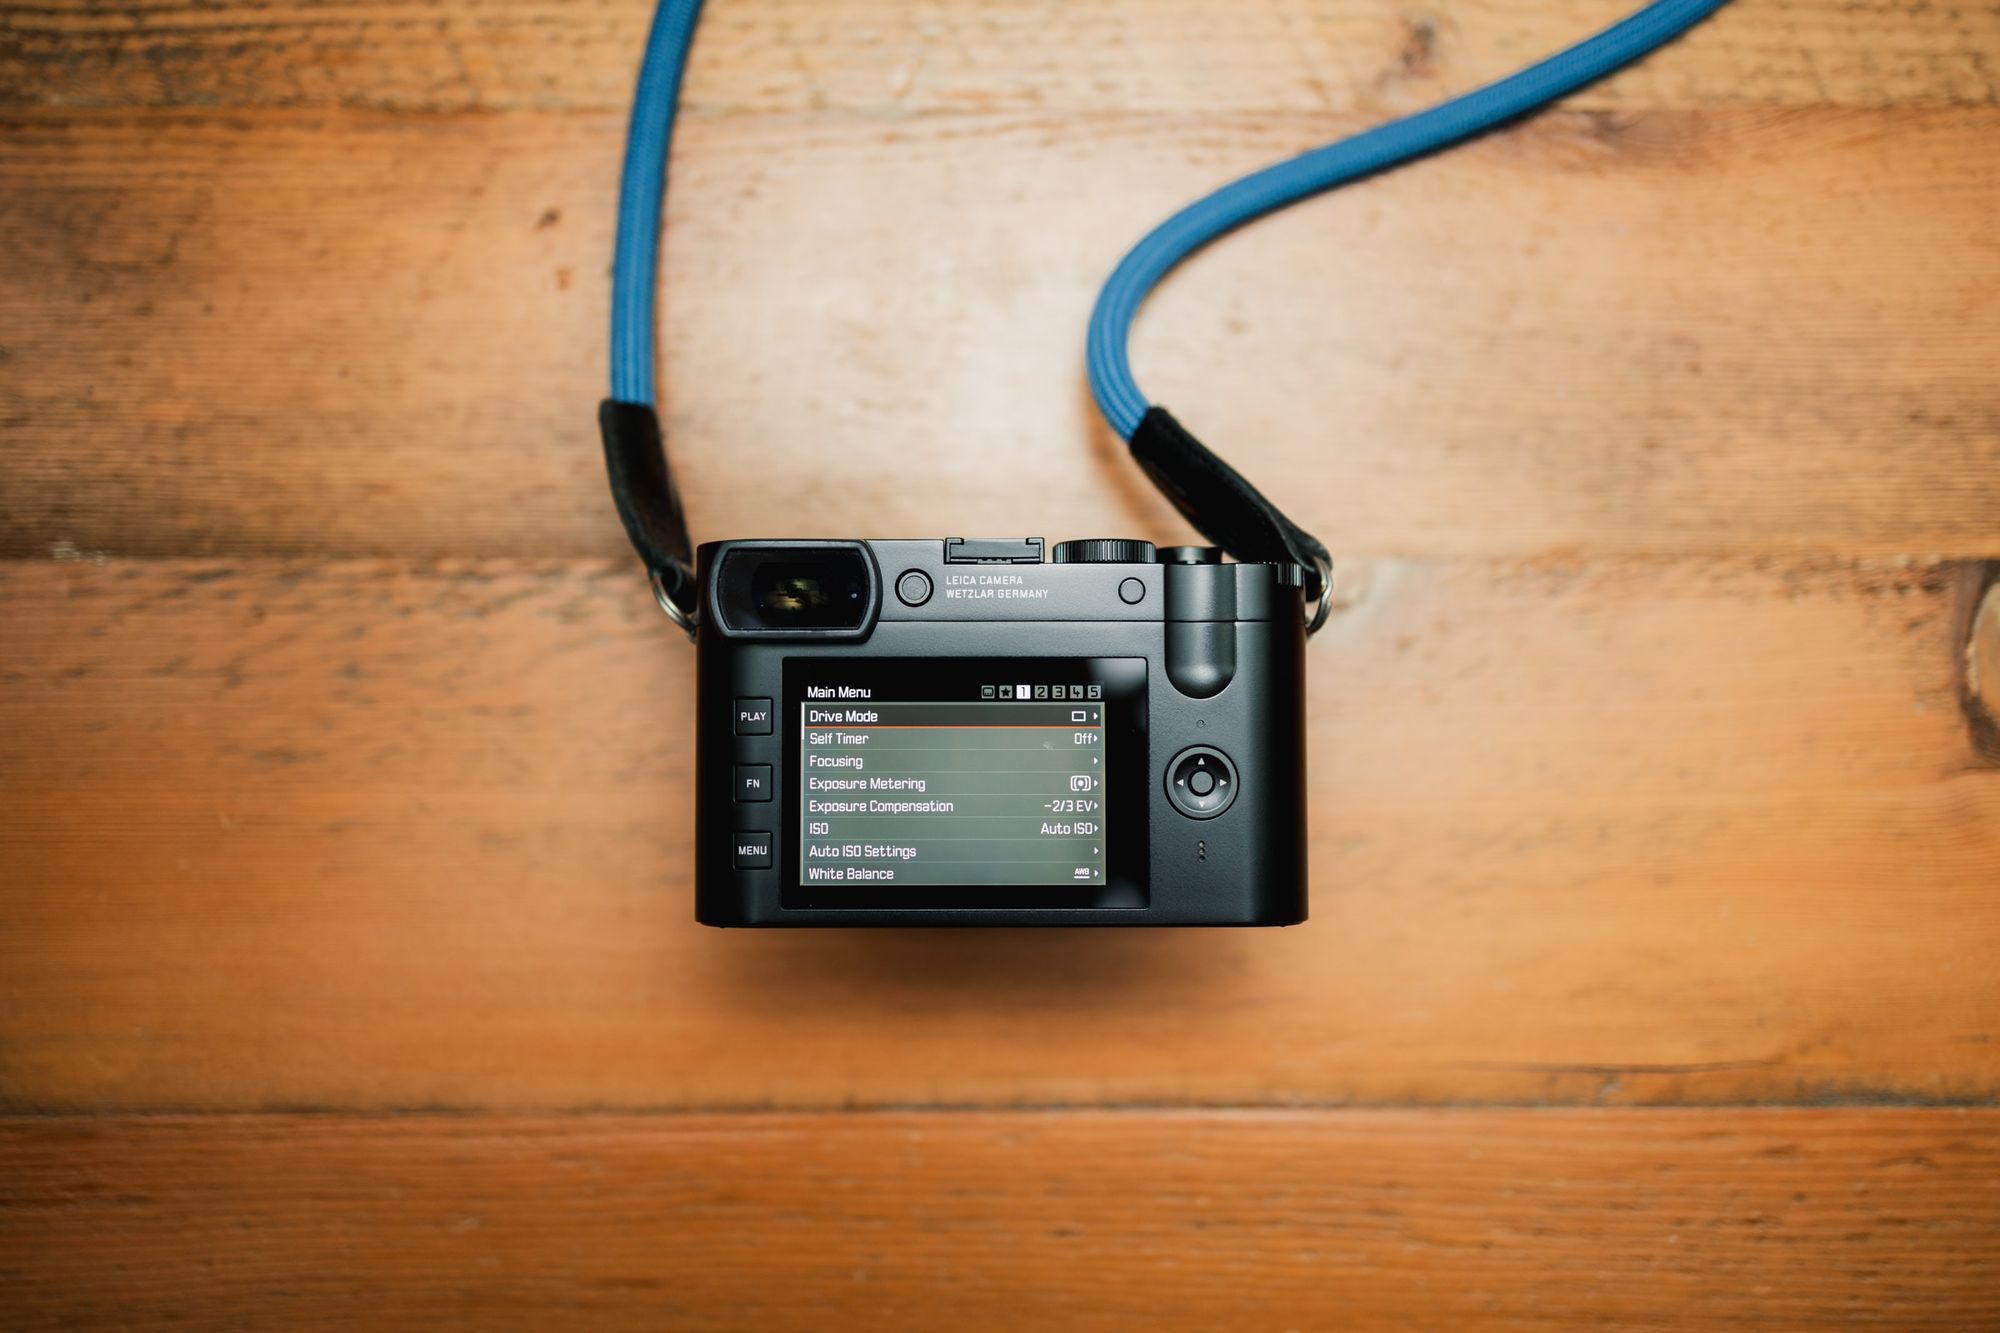 The Leica Q2